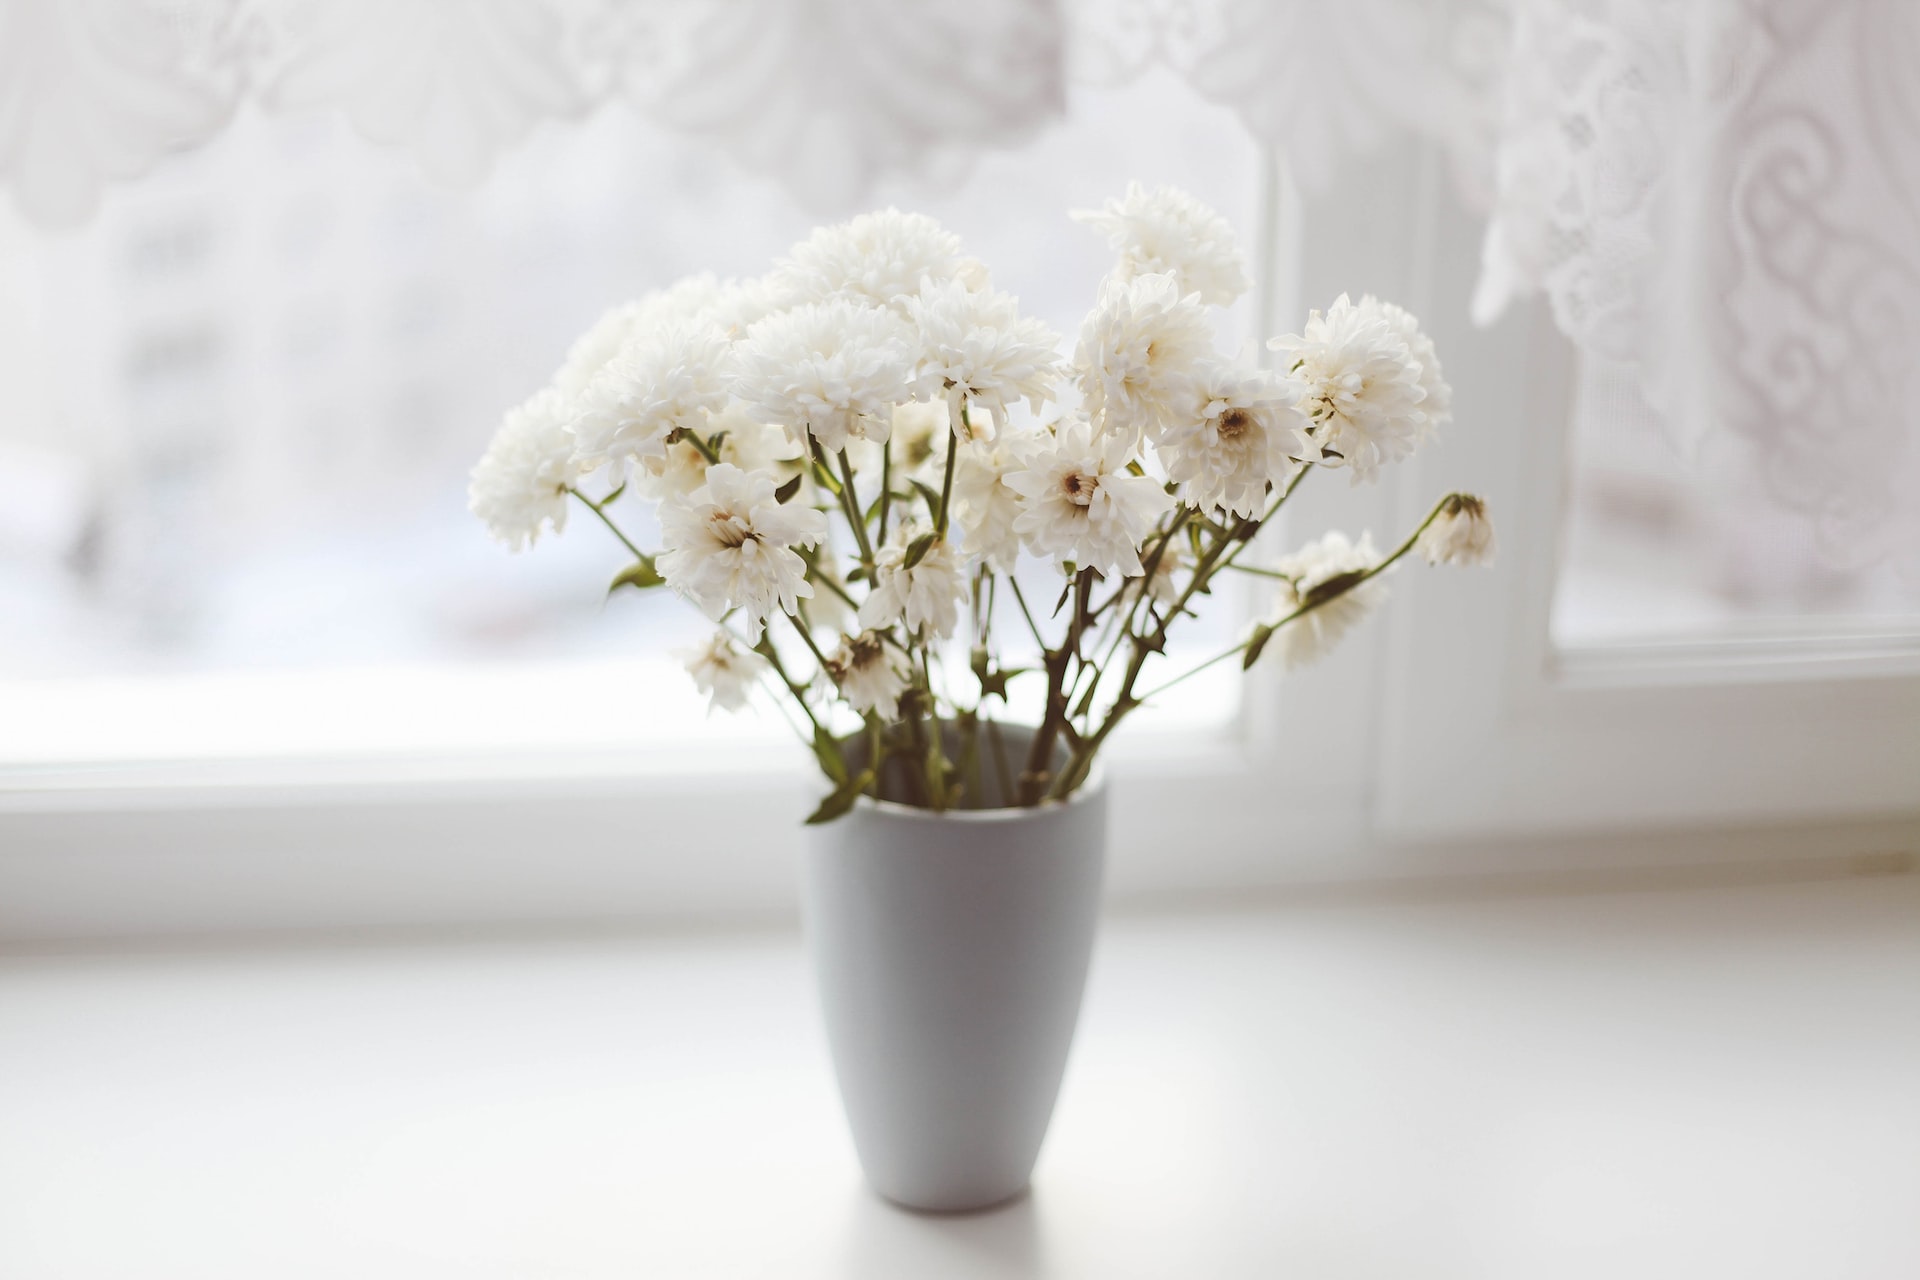 white petaled flower in vase